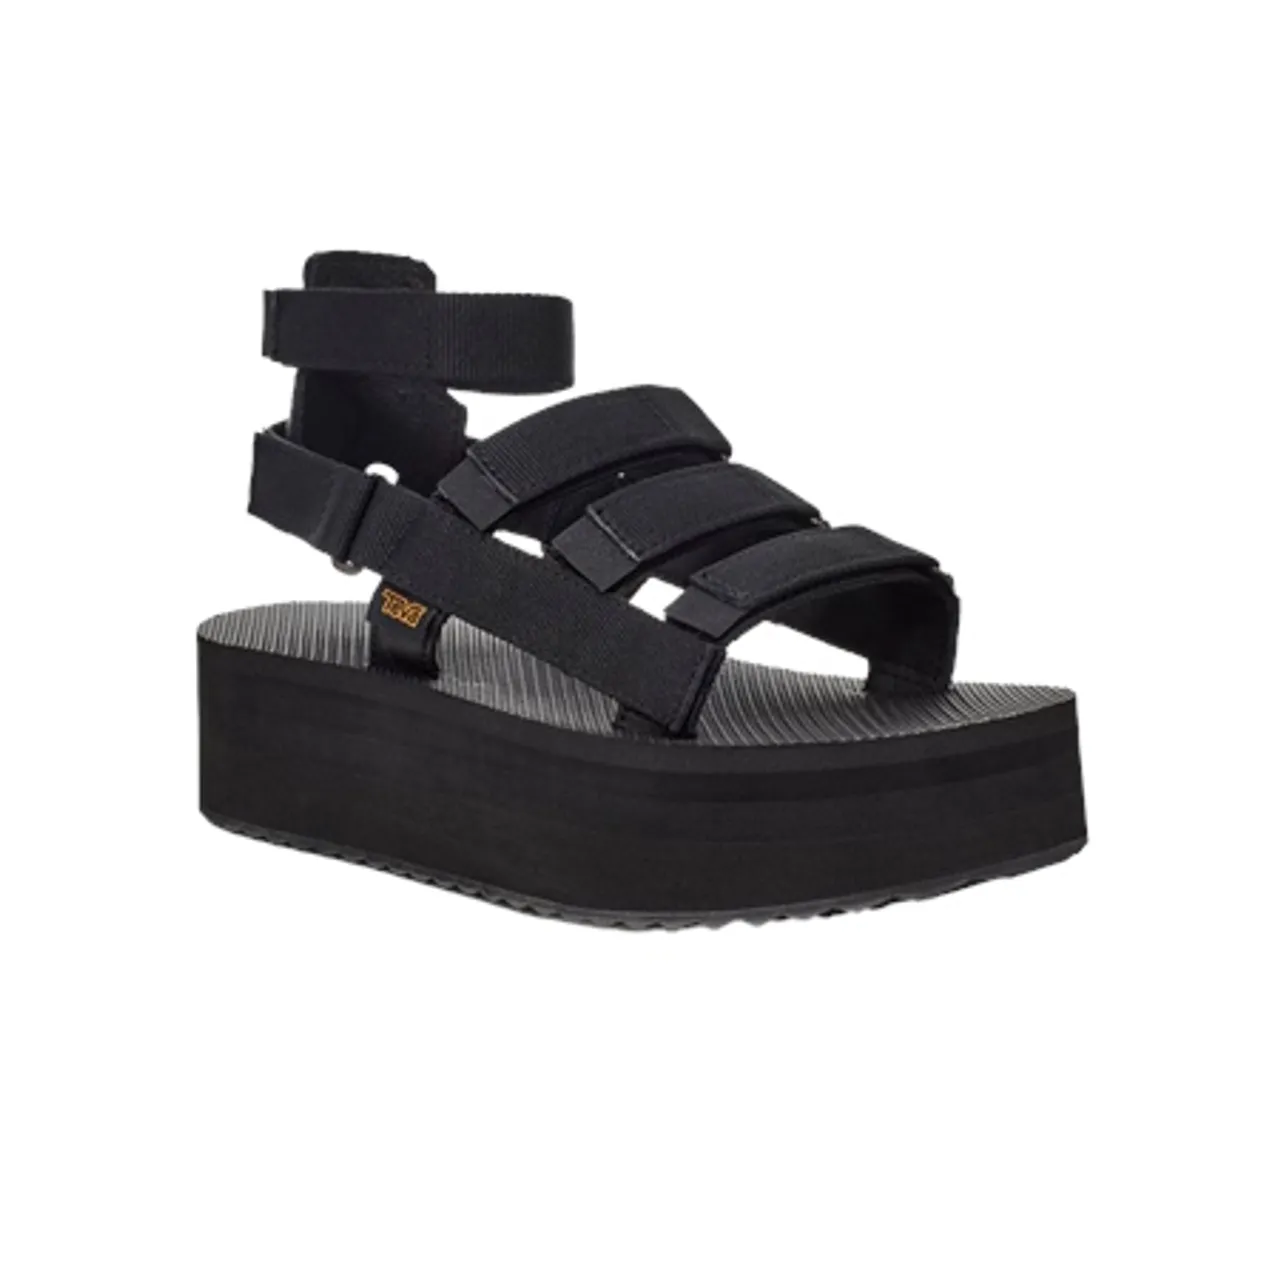 Teva Flatform Mevia Sandals - Black - UK 4 (EU 37)